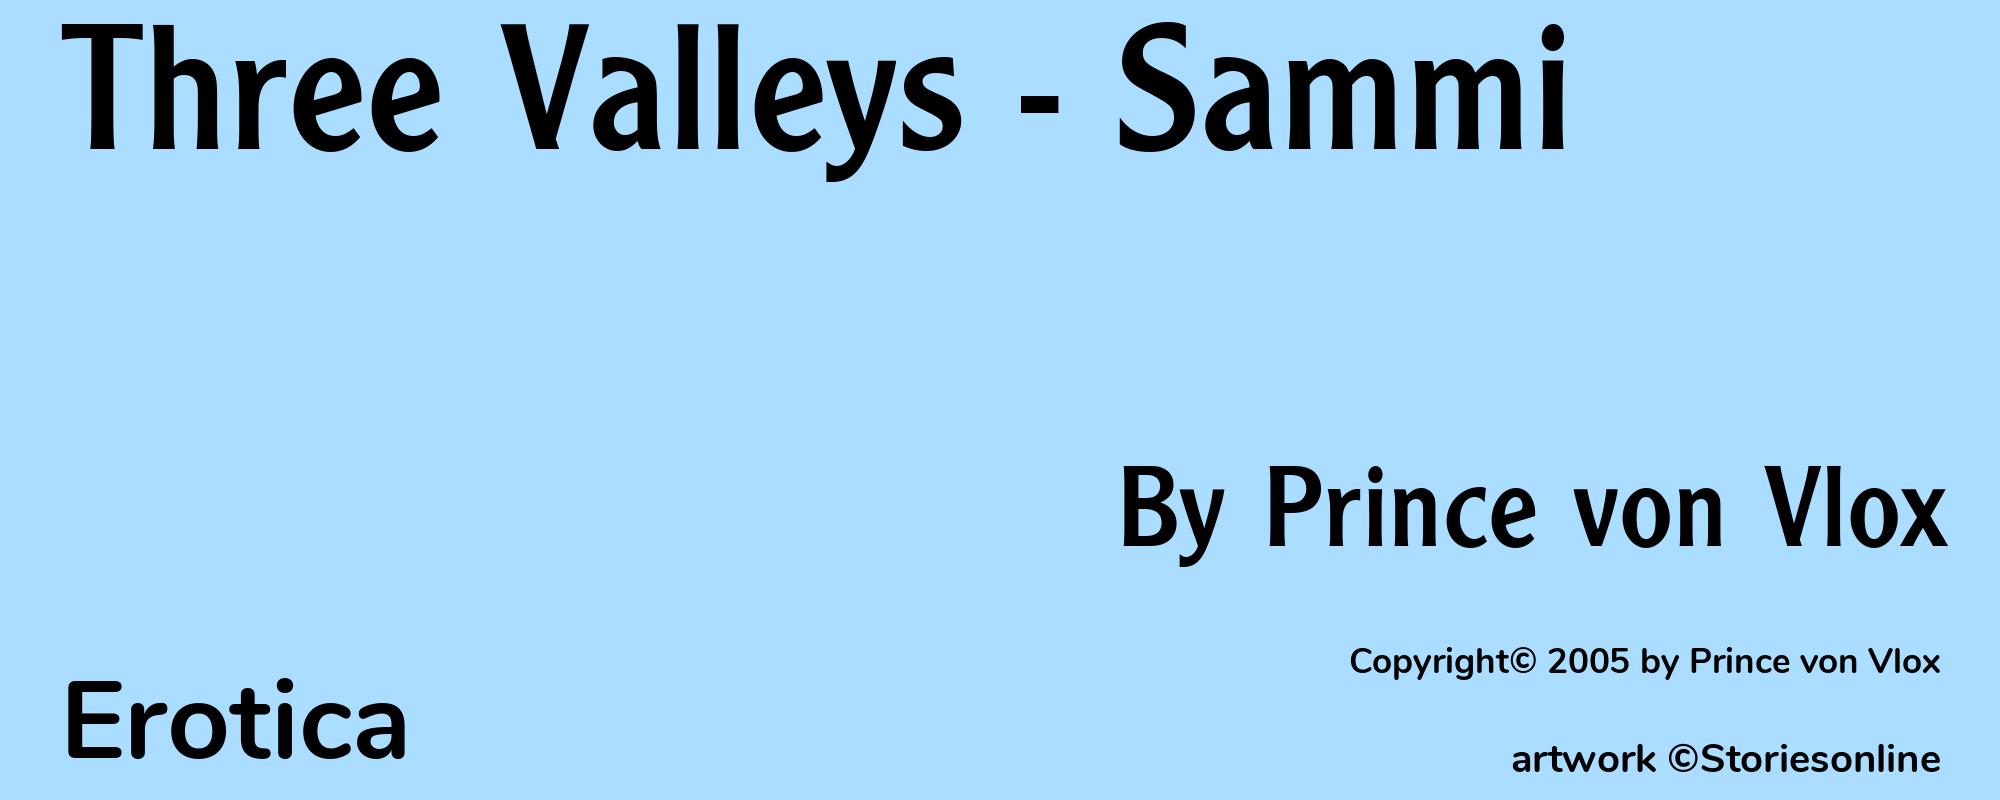 Three Valleys - Sammi - Cover